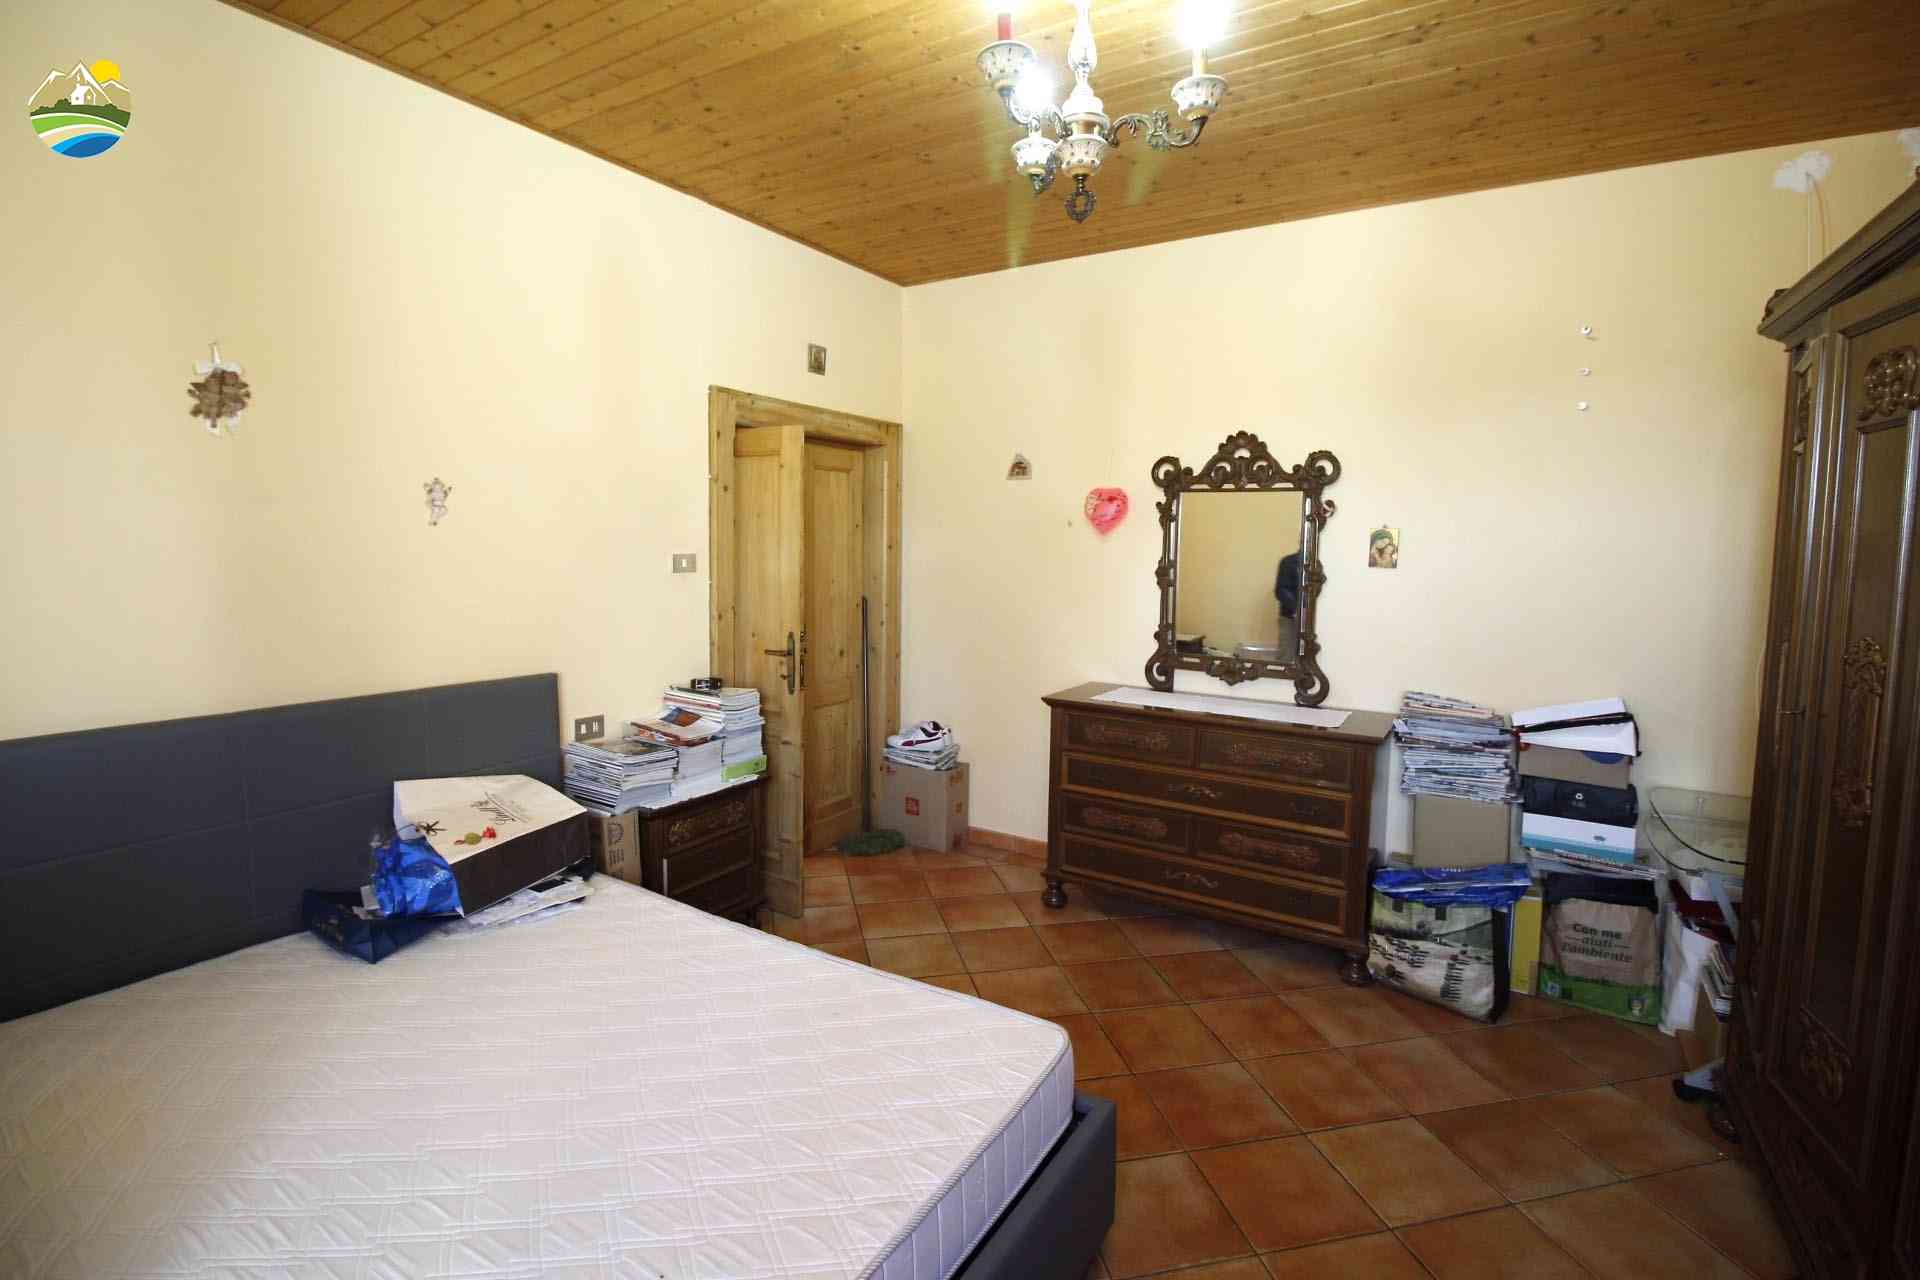 Casa in paese Casa in paese in vendita Elice (PE), Casa Antonella - Elice - EUR 90.531 680